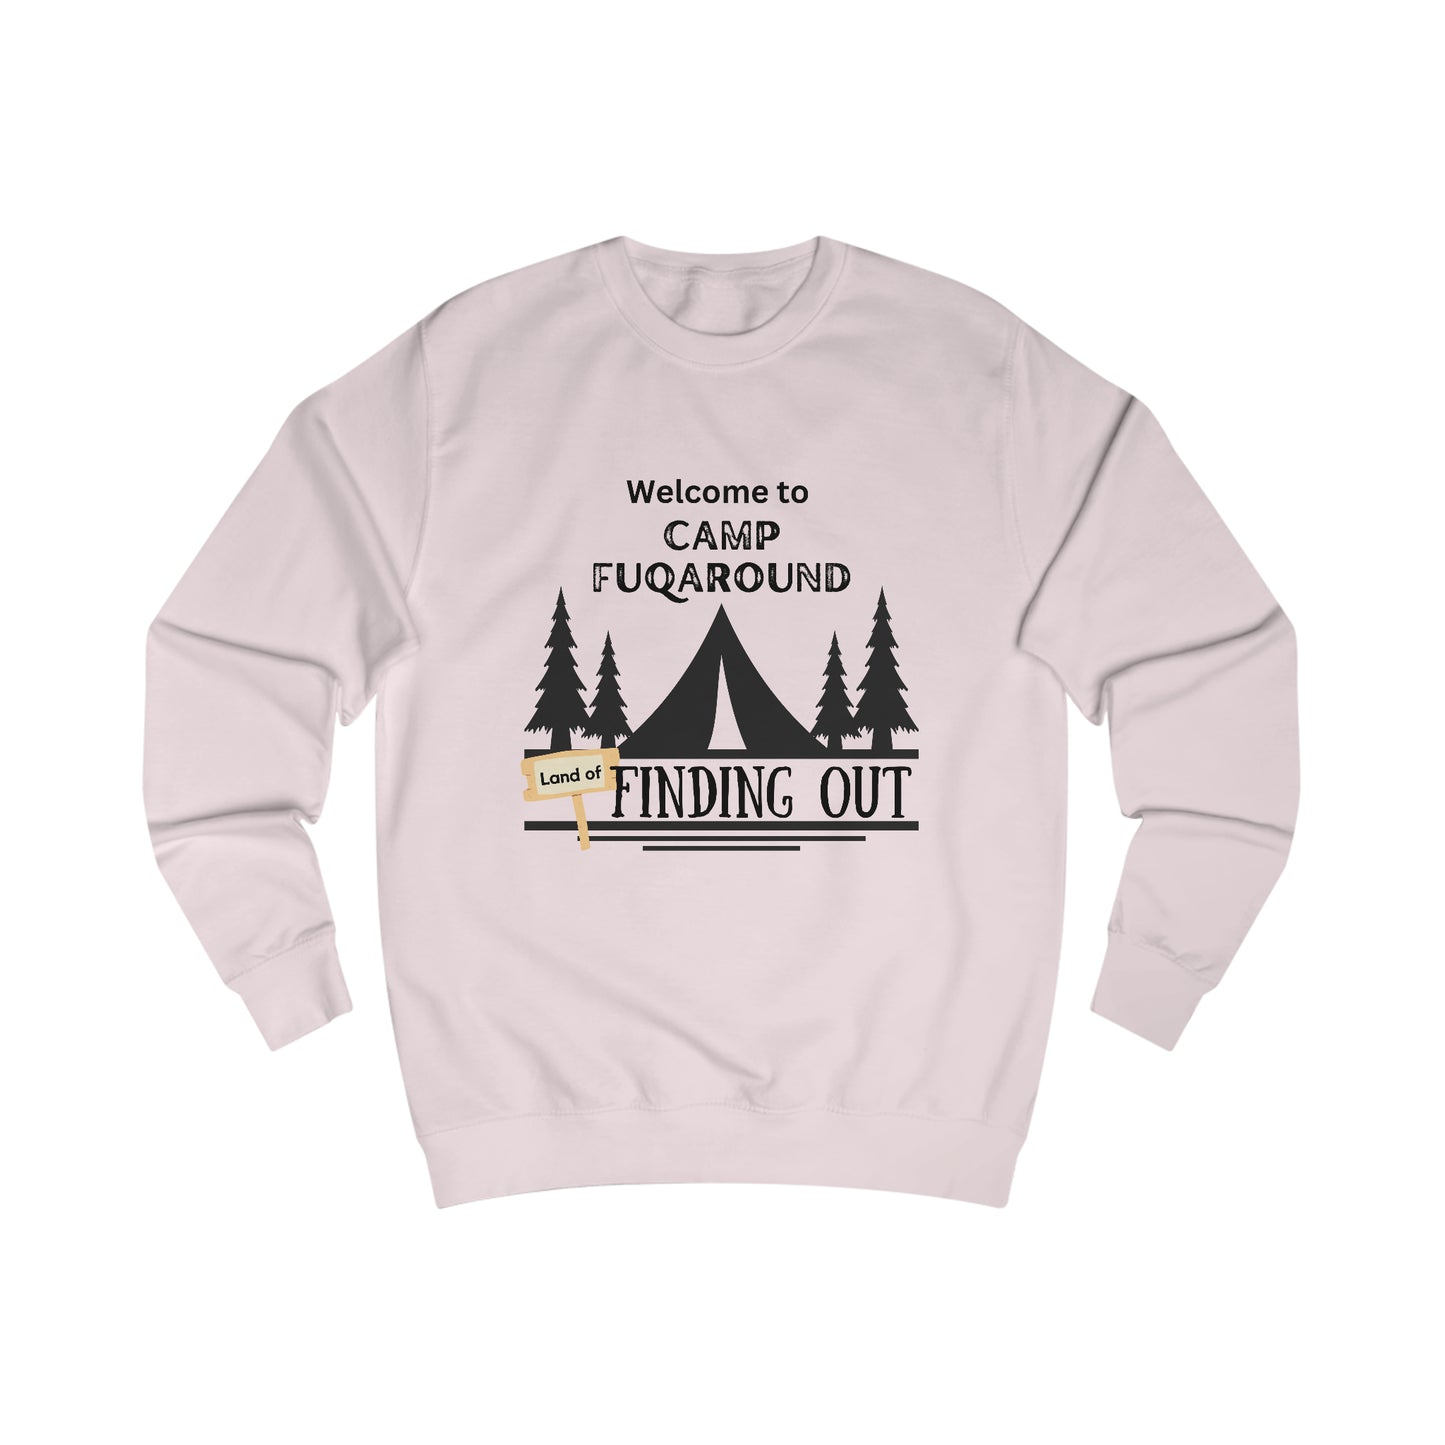 Camp "f*ck around" sweatshirt - Sassy quote shirt - bestie birthday gift